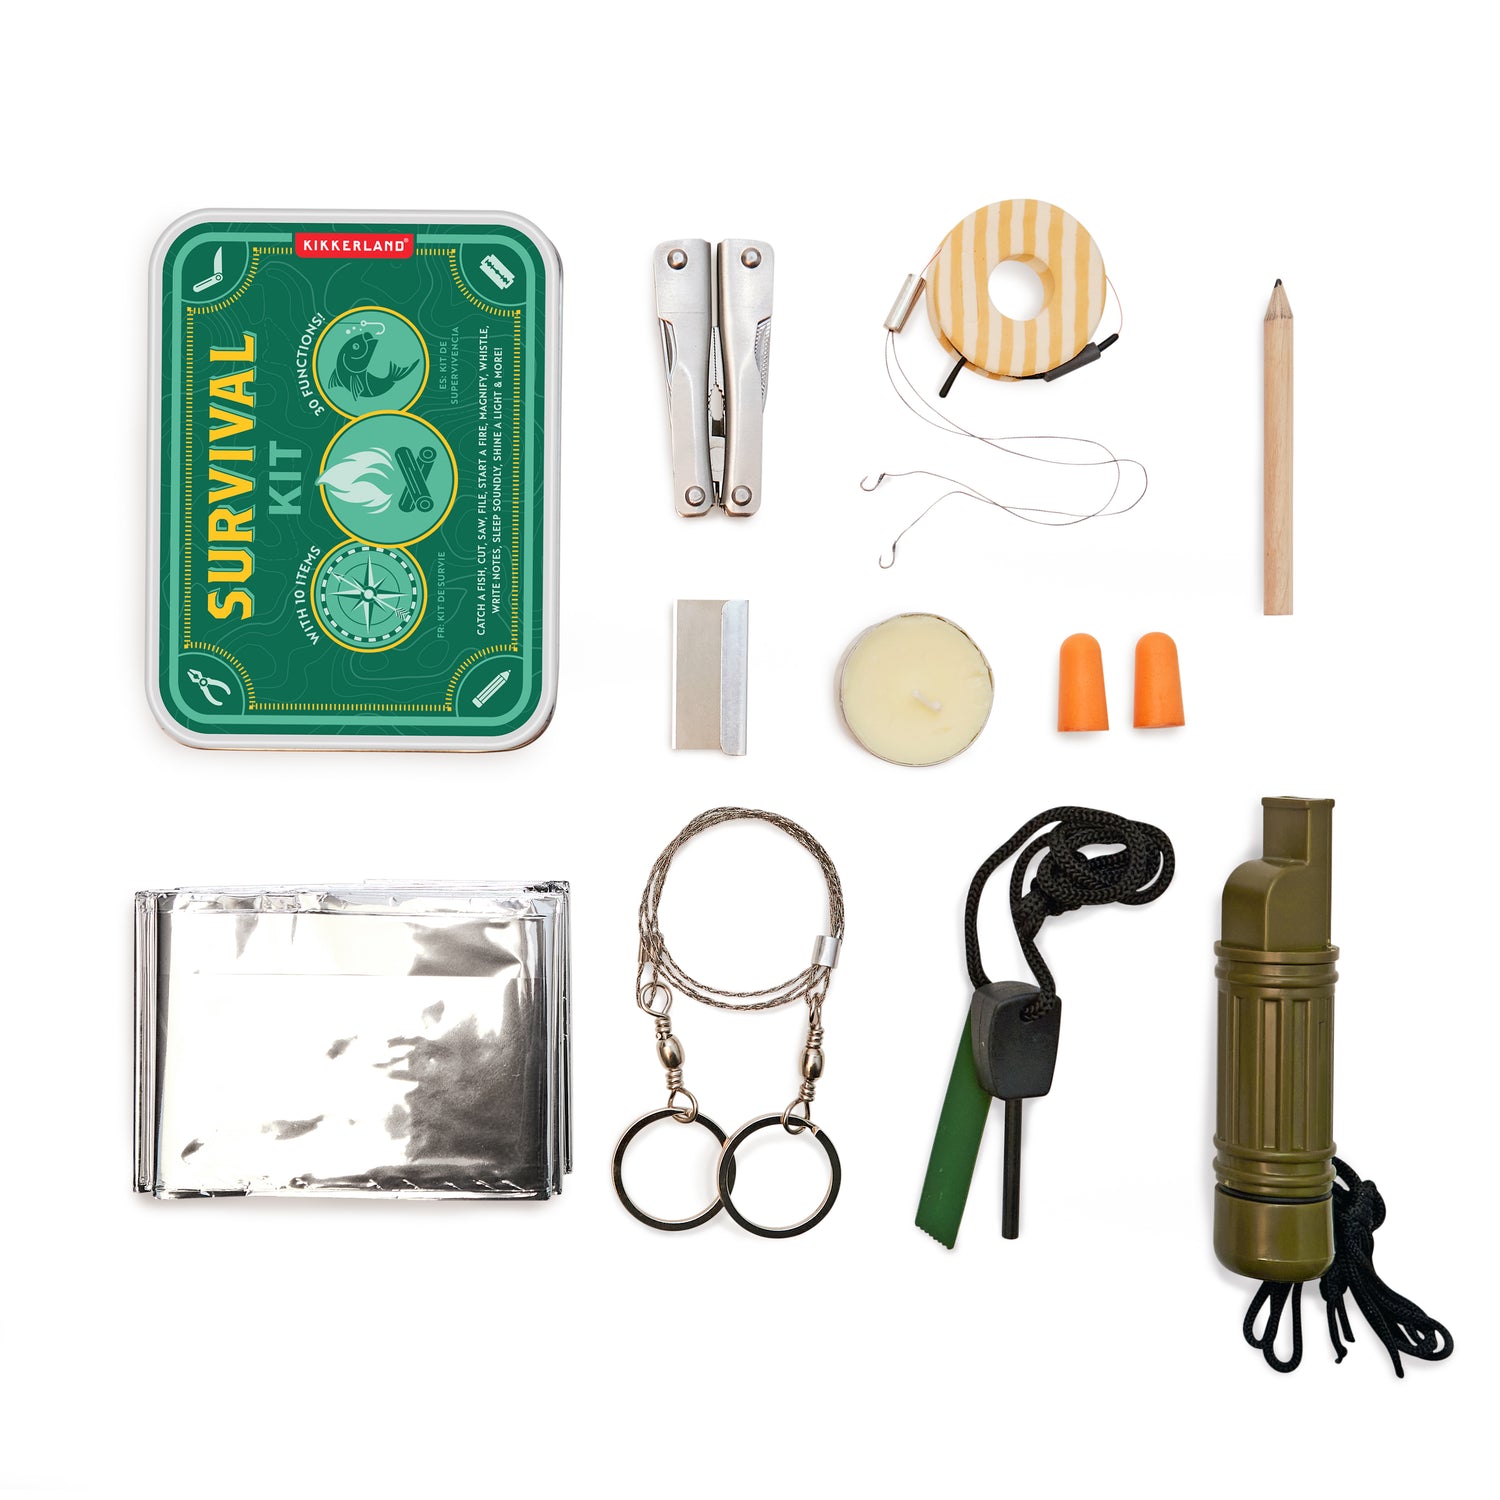 Milward Sewing Travel Kit Green - 251 1403